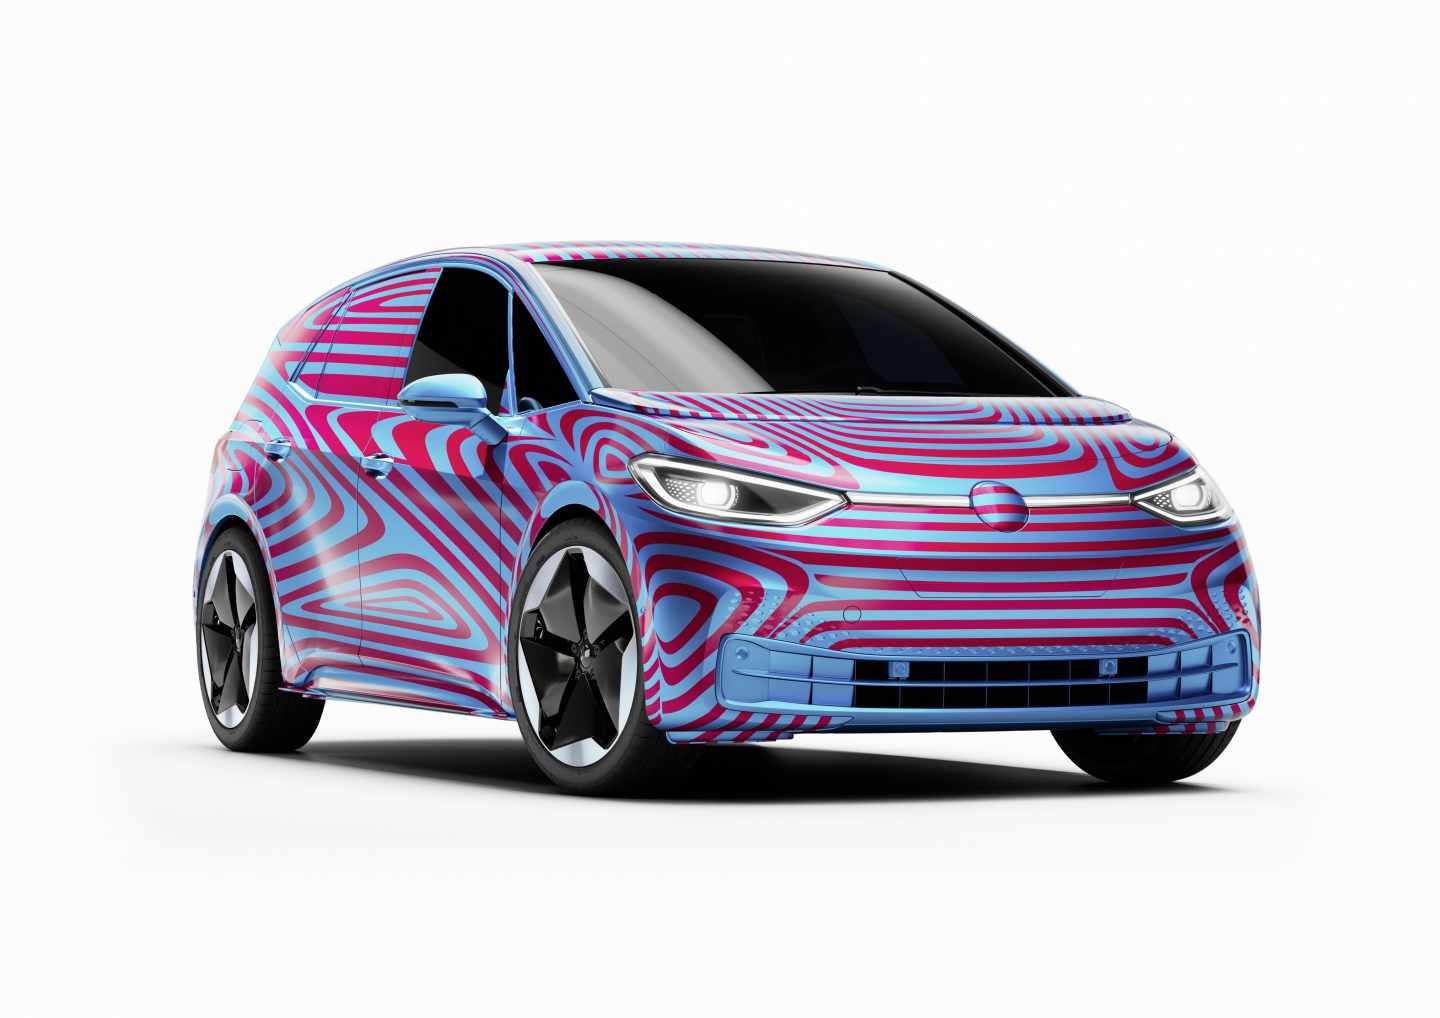 El Grupo Volkswagen lanzará en España 20 modelos eléctricos en los próximos dos años.